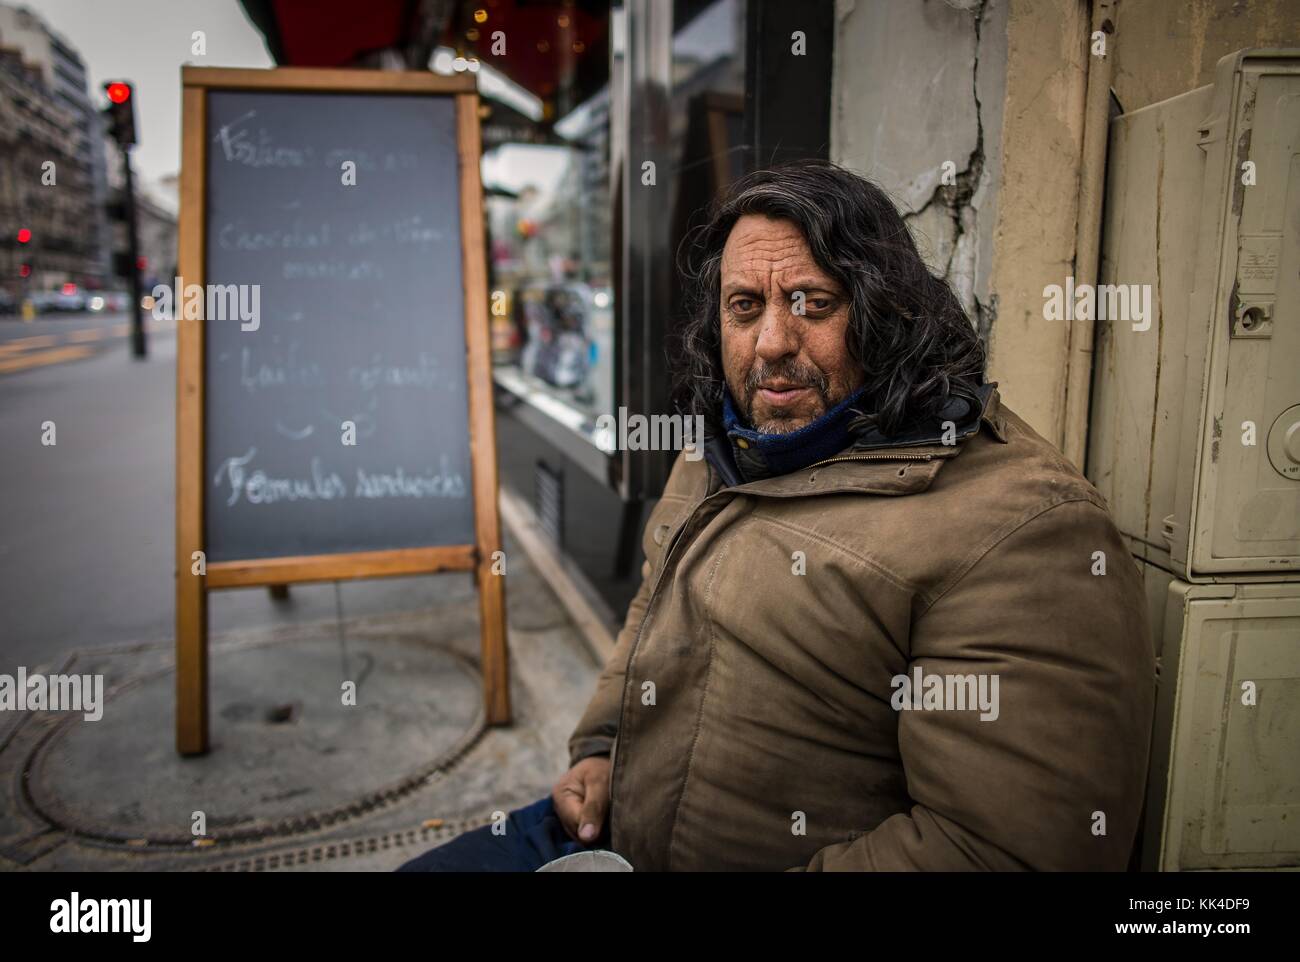 Pauvreté urbaine - 31/03/2013 - - mendiant et diabétique Roma à la sortie d'une boulangerie en période de Pâques - Sylvain Leser / le Pictorium Banque D'Images